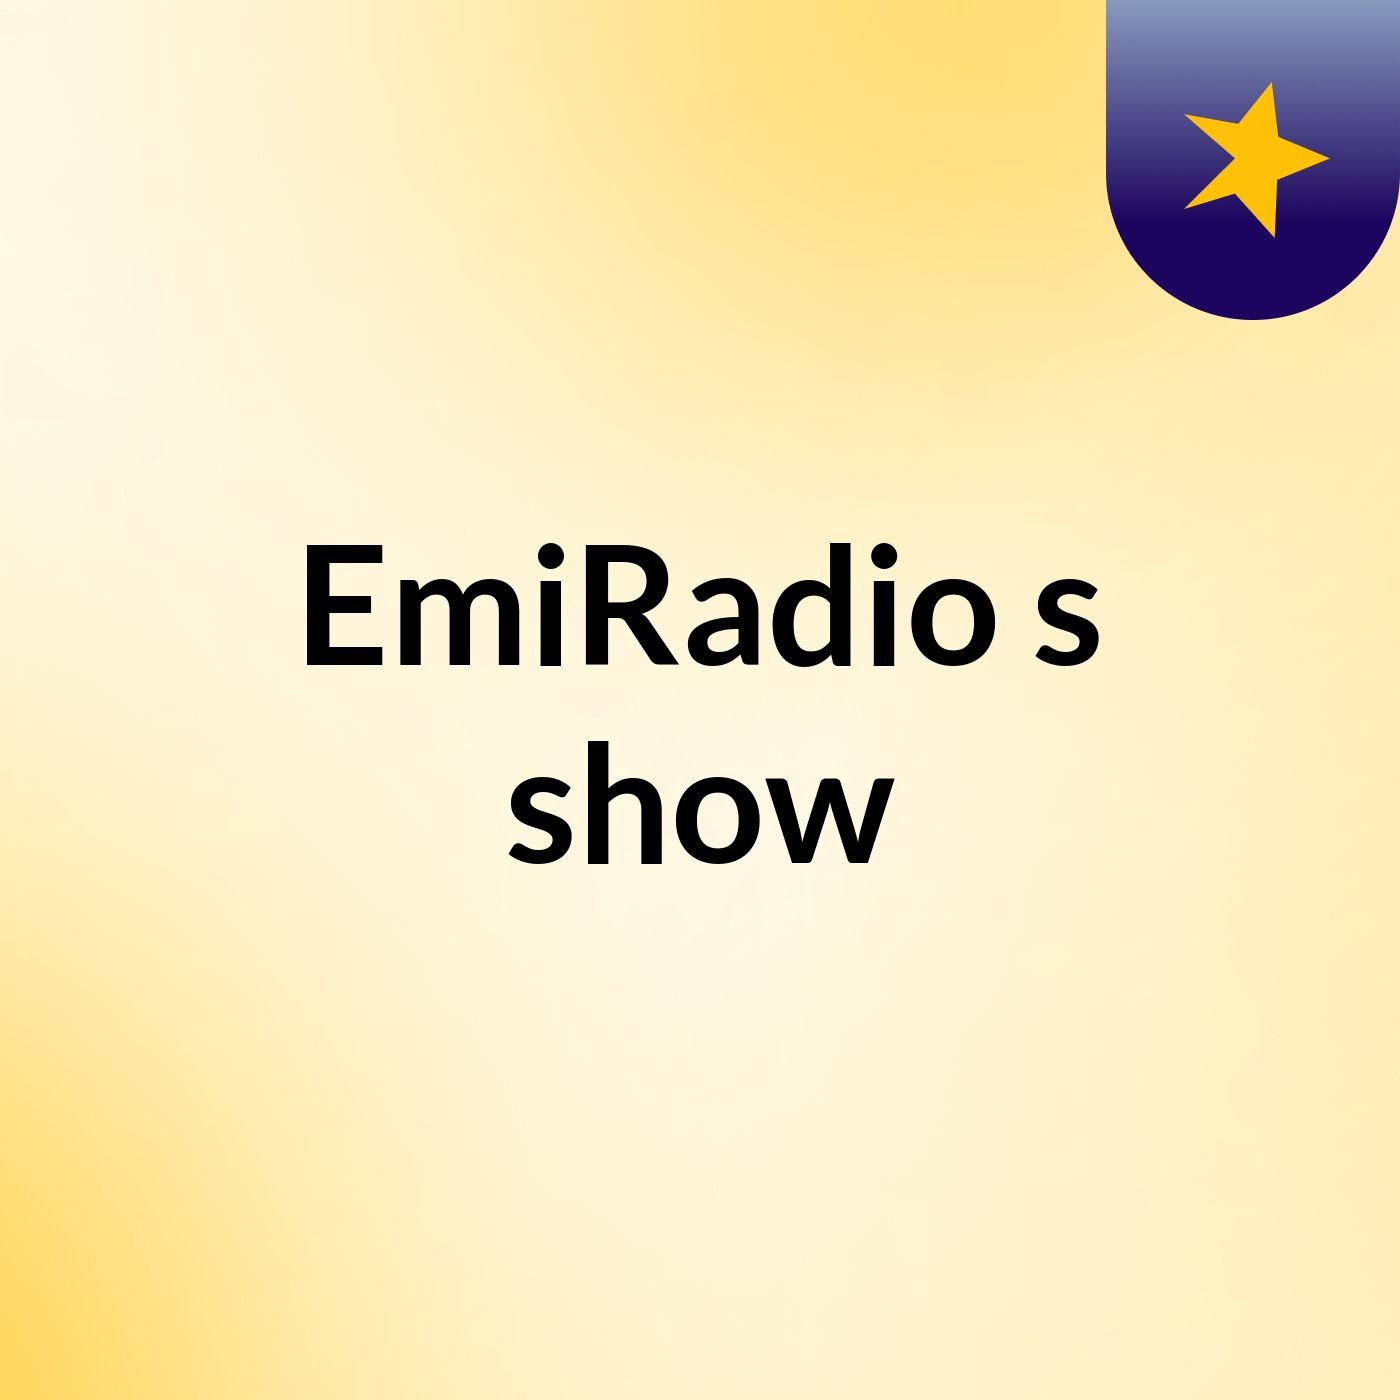 EmiRadio's show